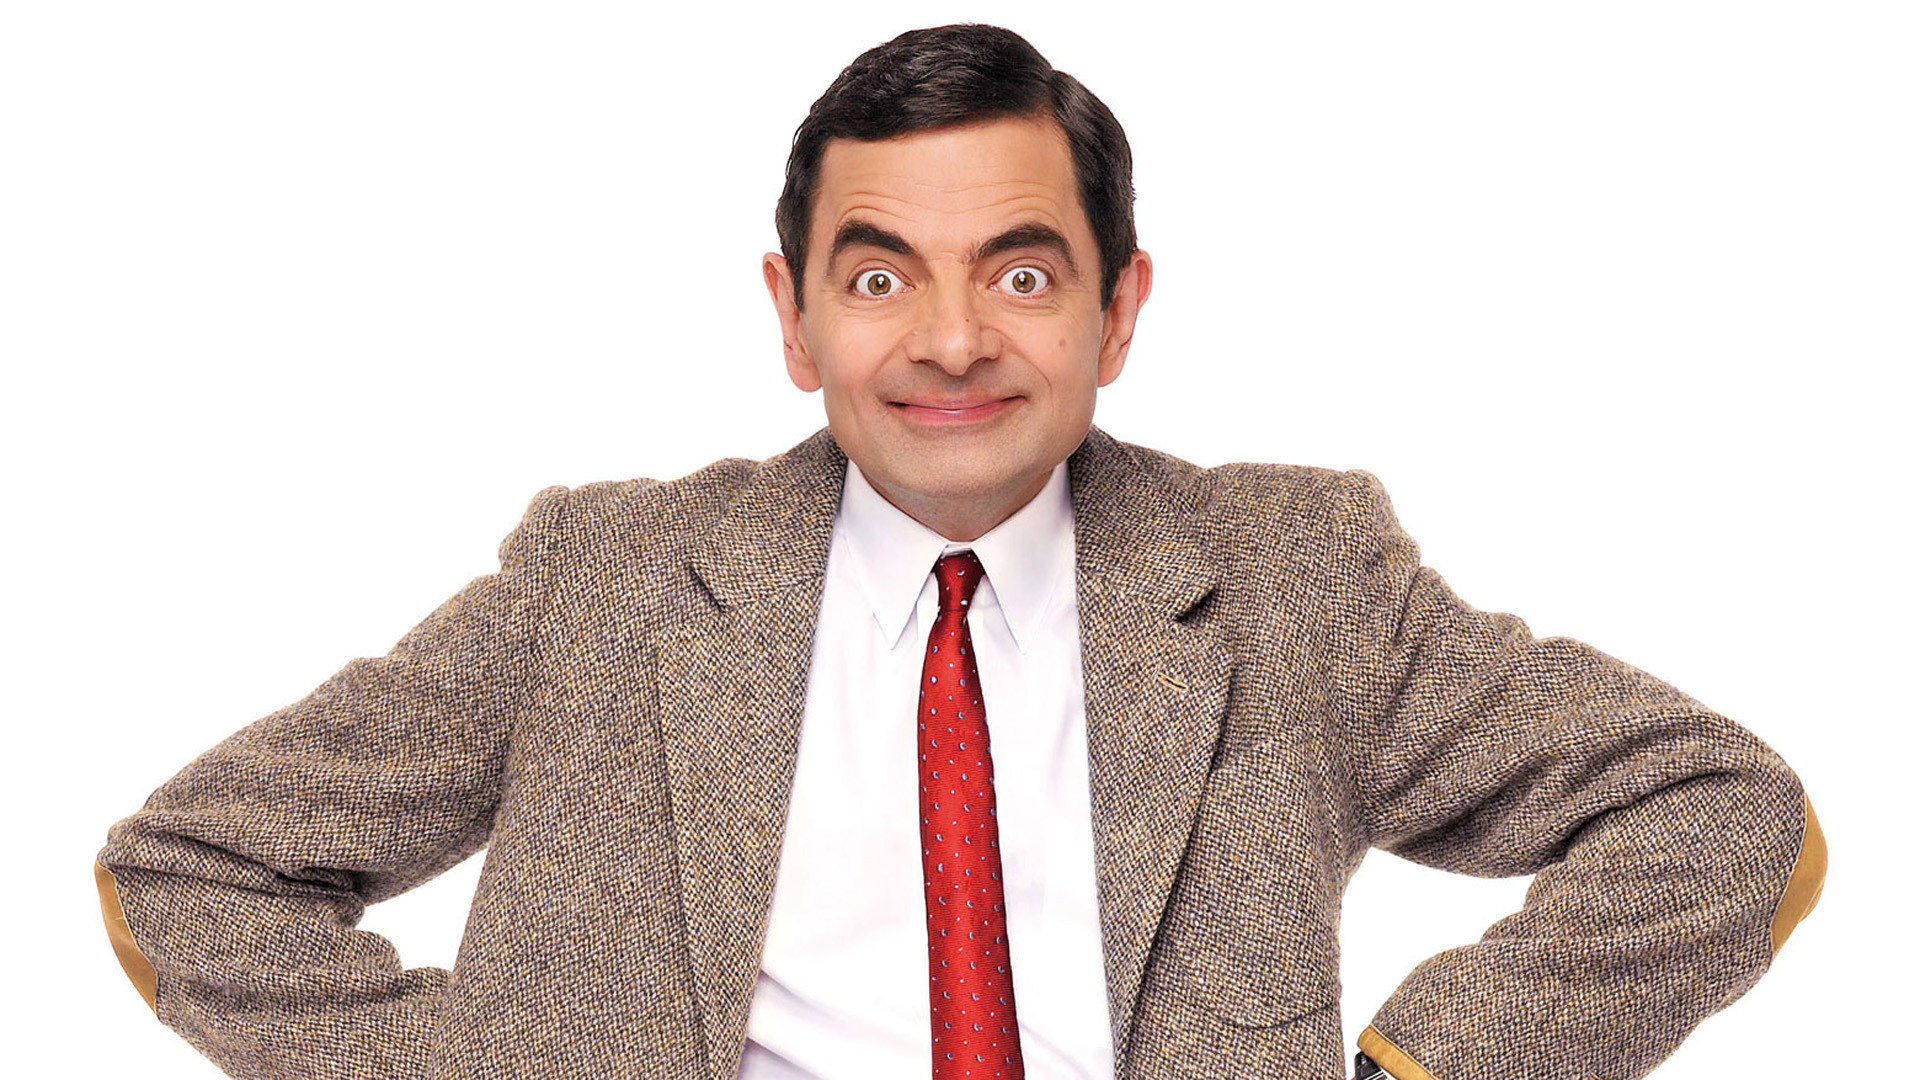 Mr Bean #9